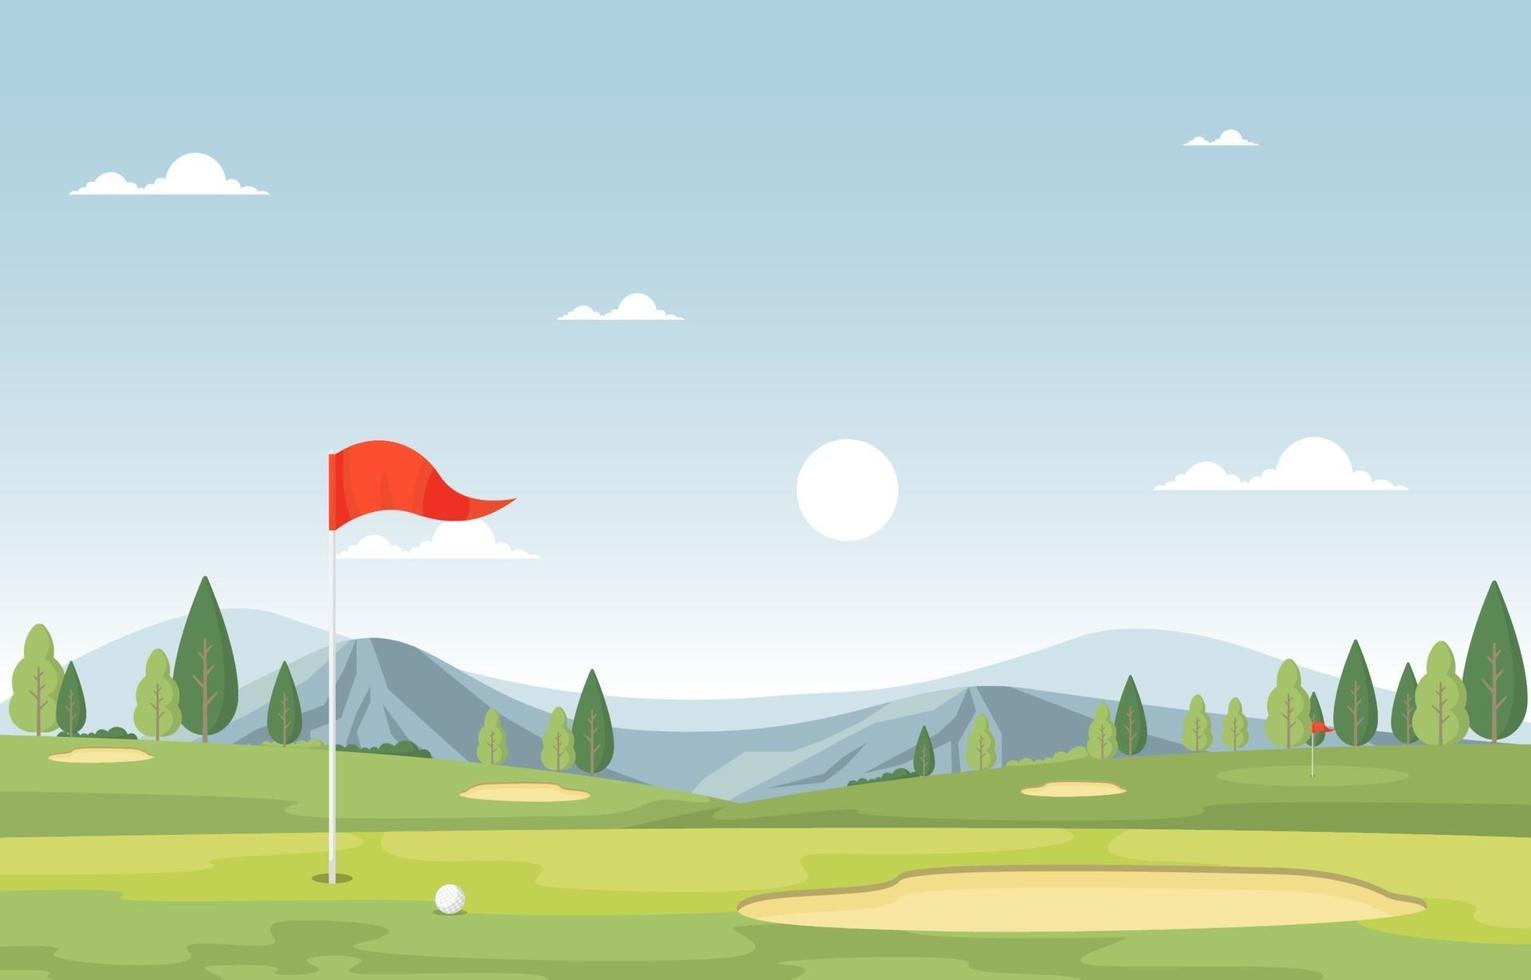 campo de golf con bandera roja, árboles y montañas vector